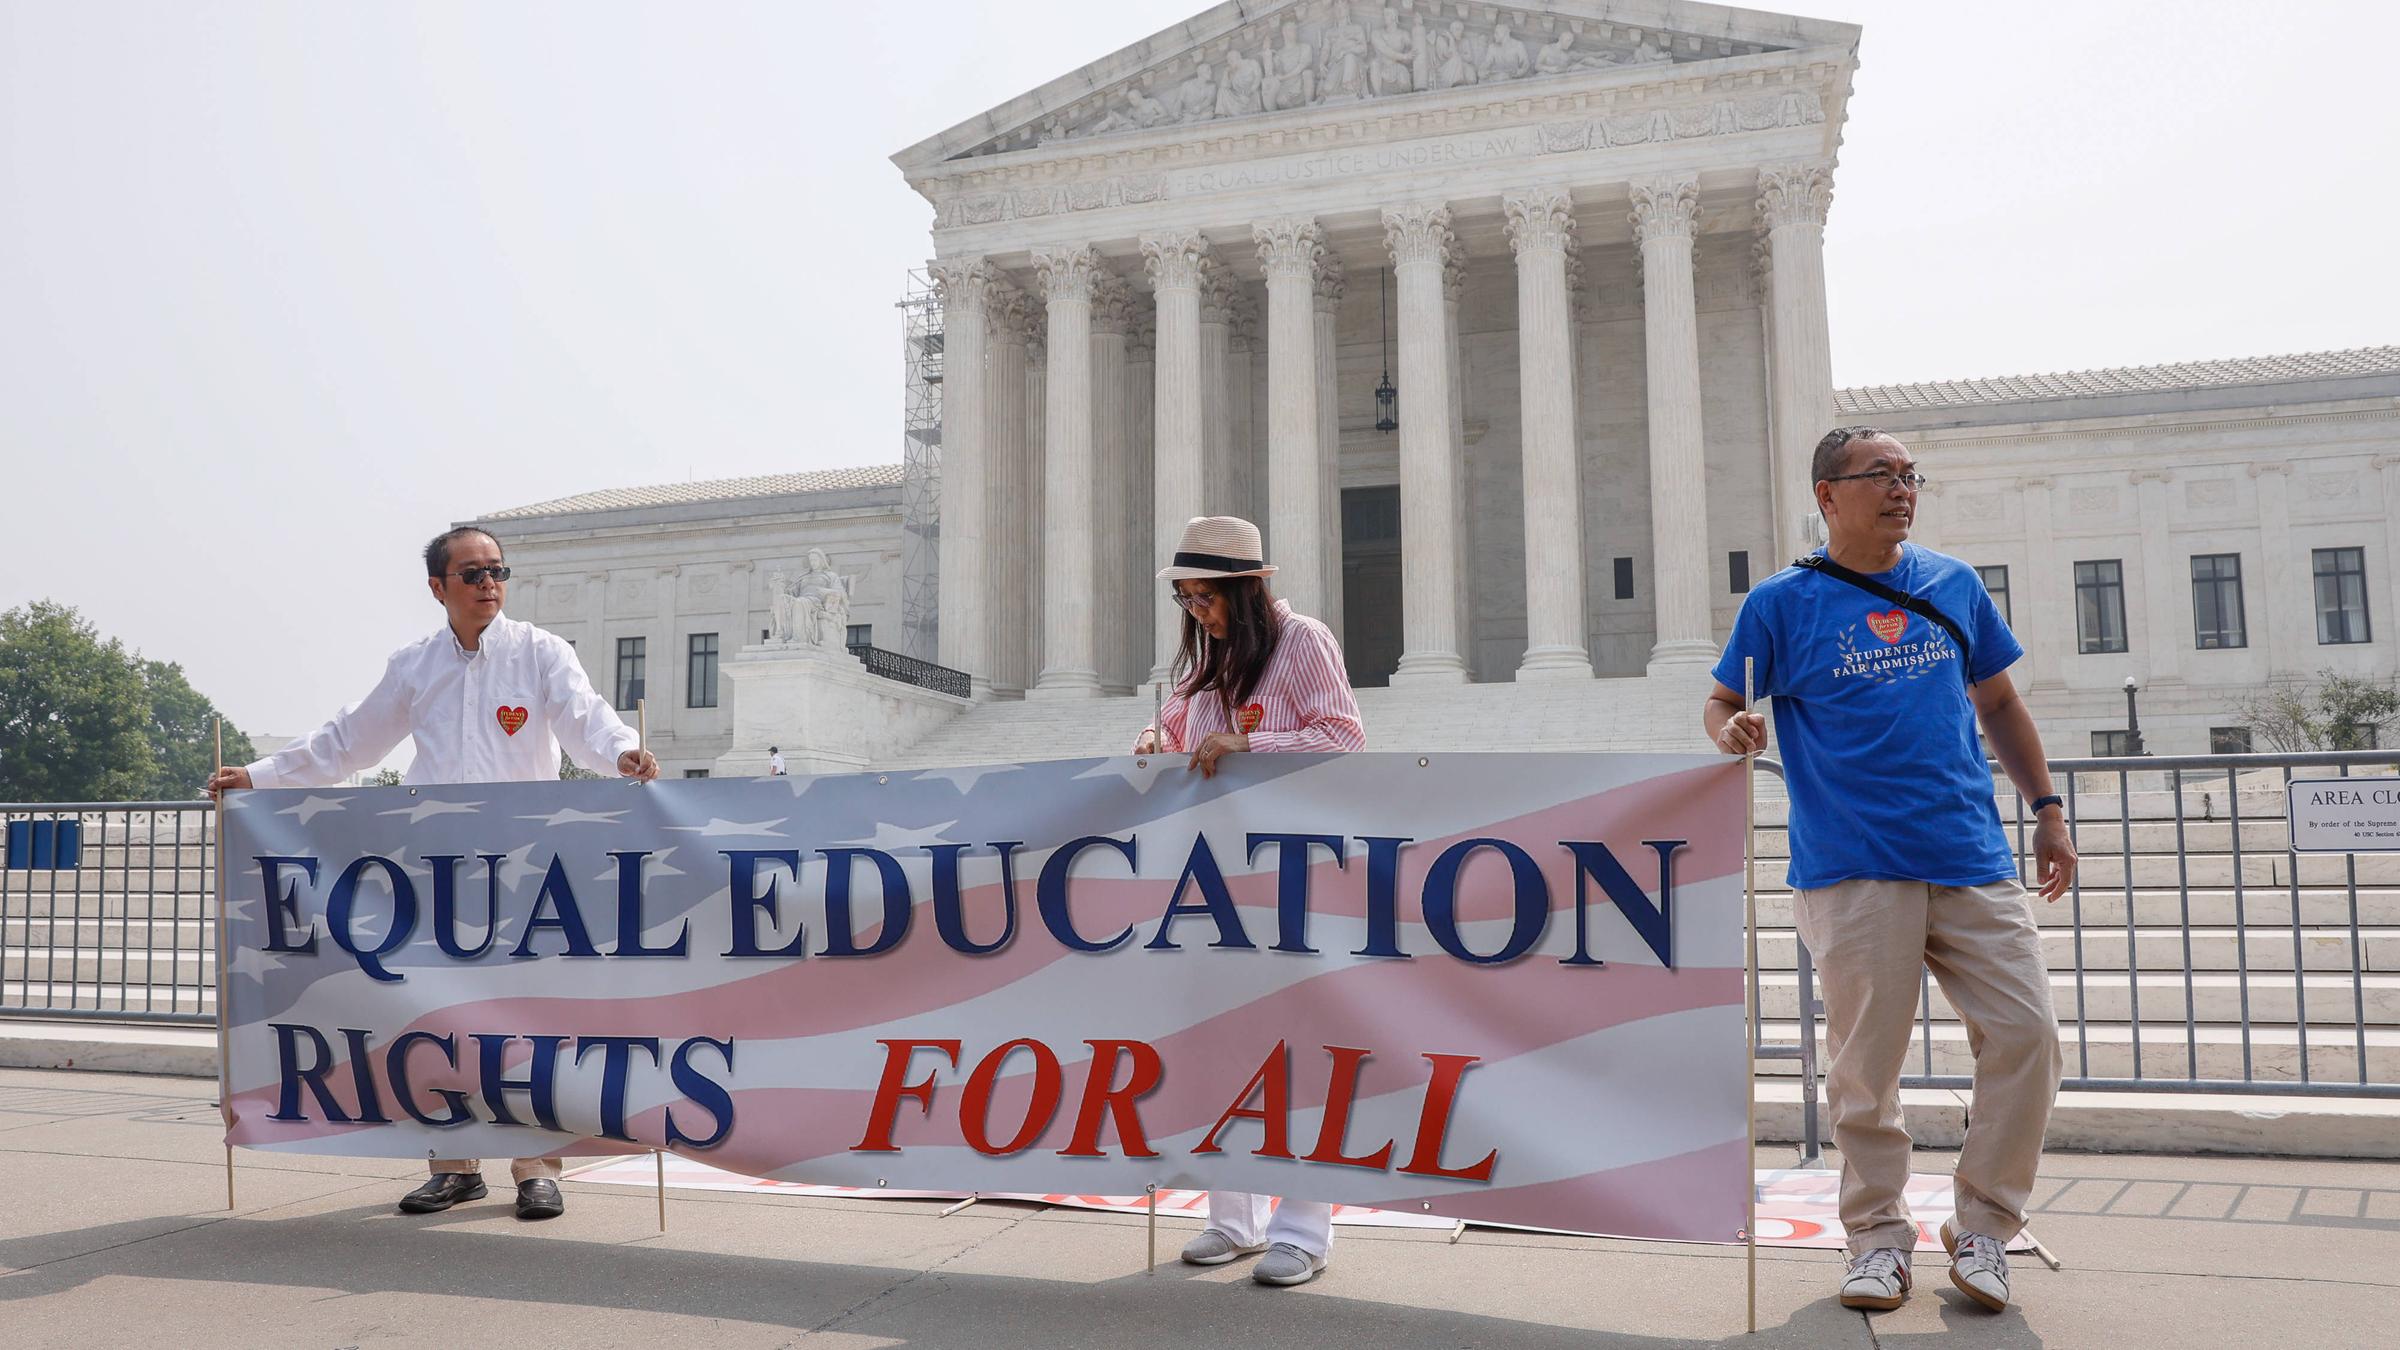 Personen halten ein Banner, auf dem übersetzt steht: „Gleiche Bildungsrechte für alle.“